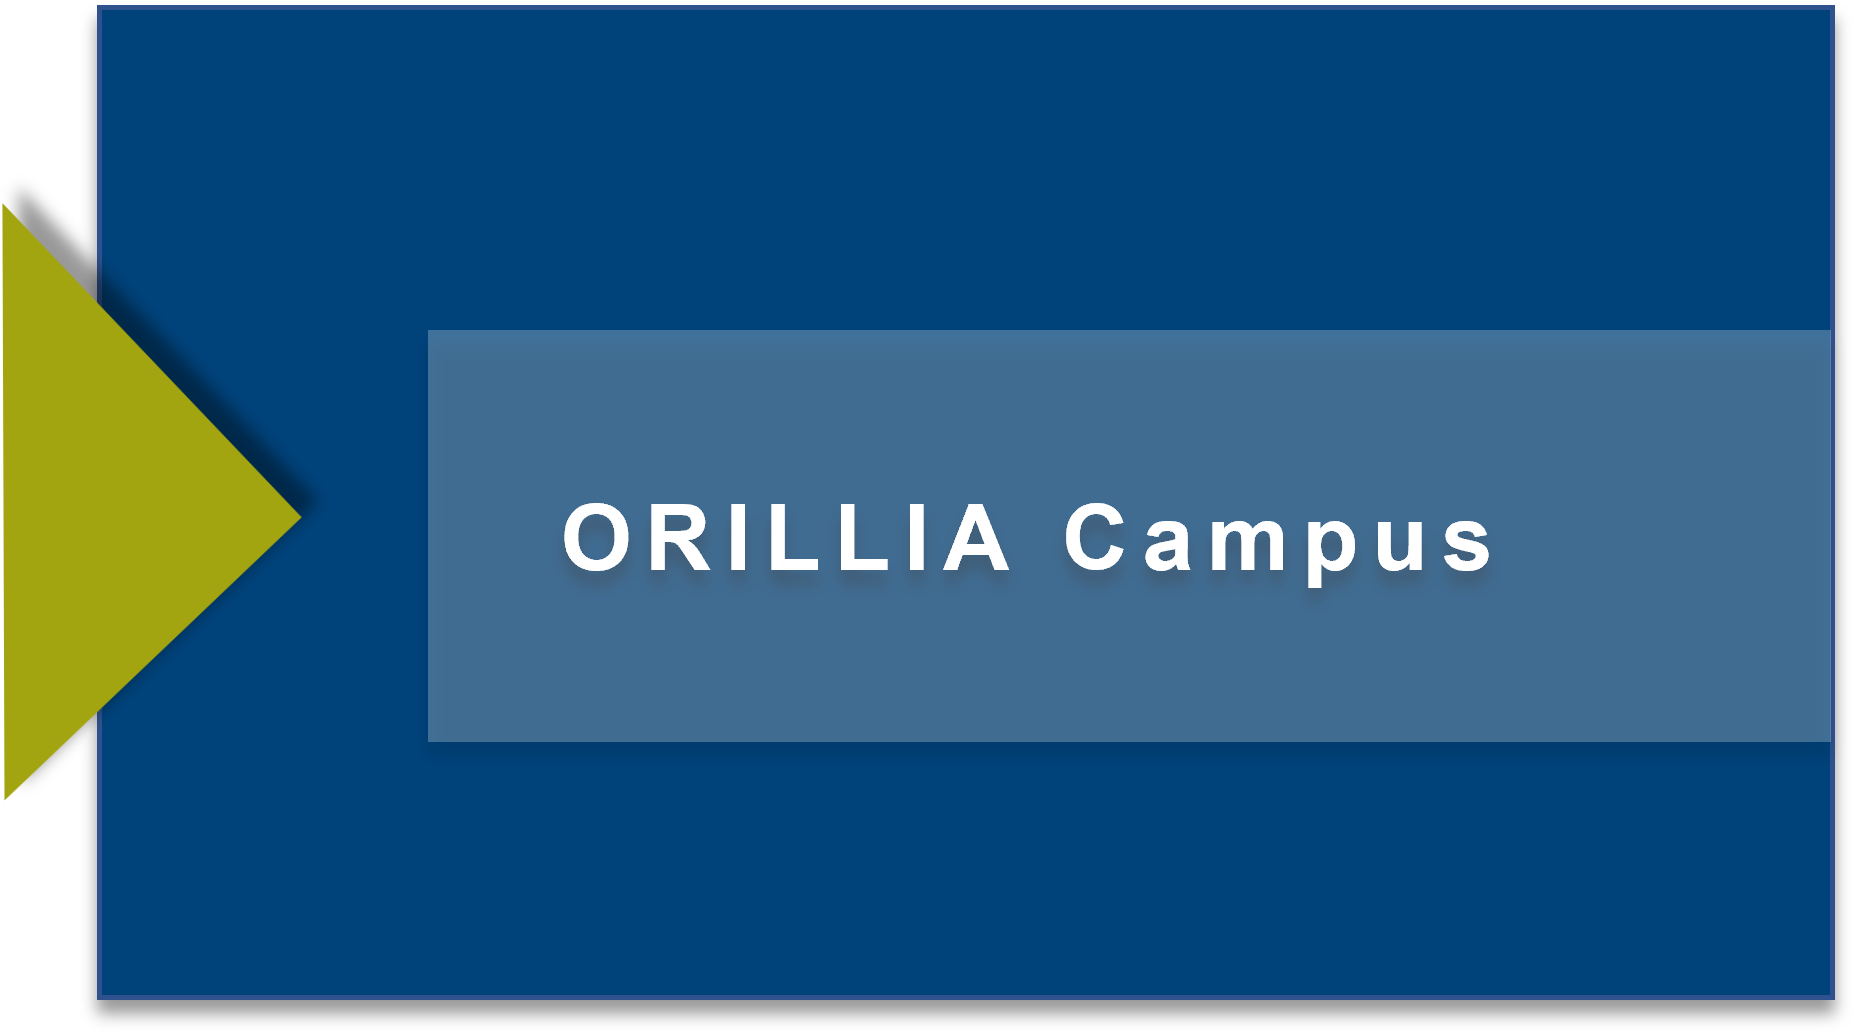 Orillia Campus